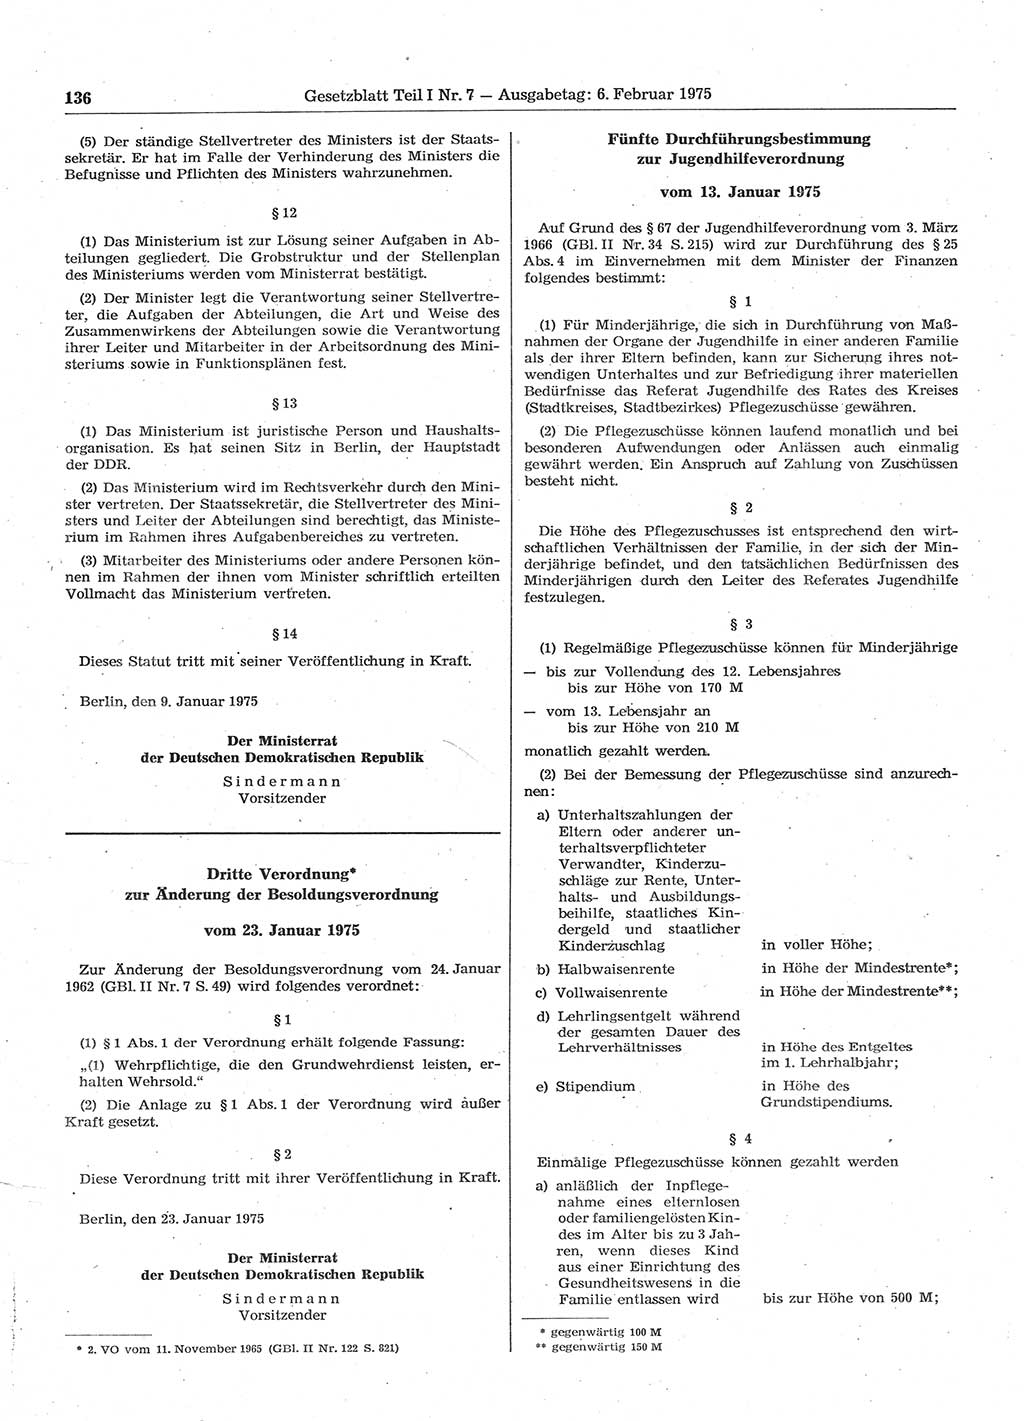 Gesetzblatt (GBl.) der Deutschen Demokratischen Republik (DDR) Teil Ⅰ 1975, Seite 136 (GBl. DDR Ⅰ 1975, S. 136)